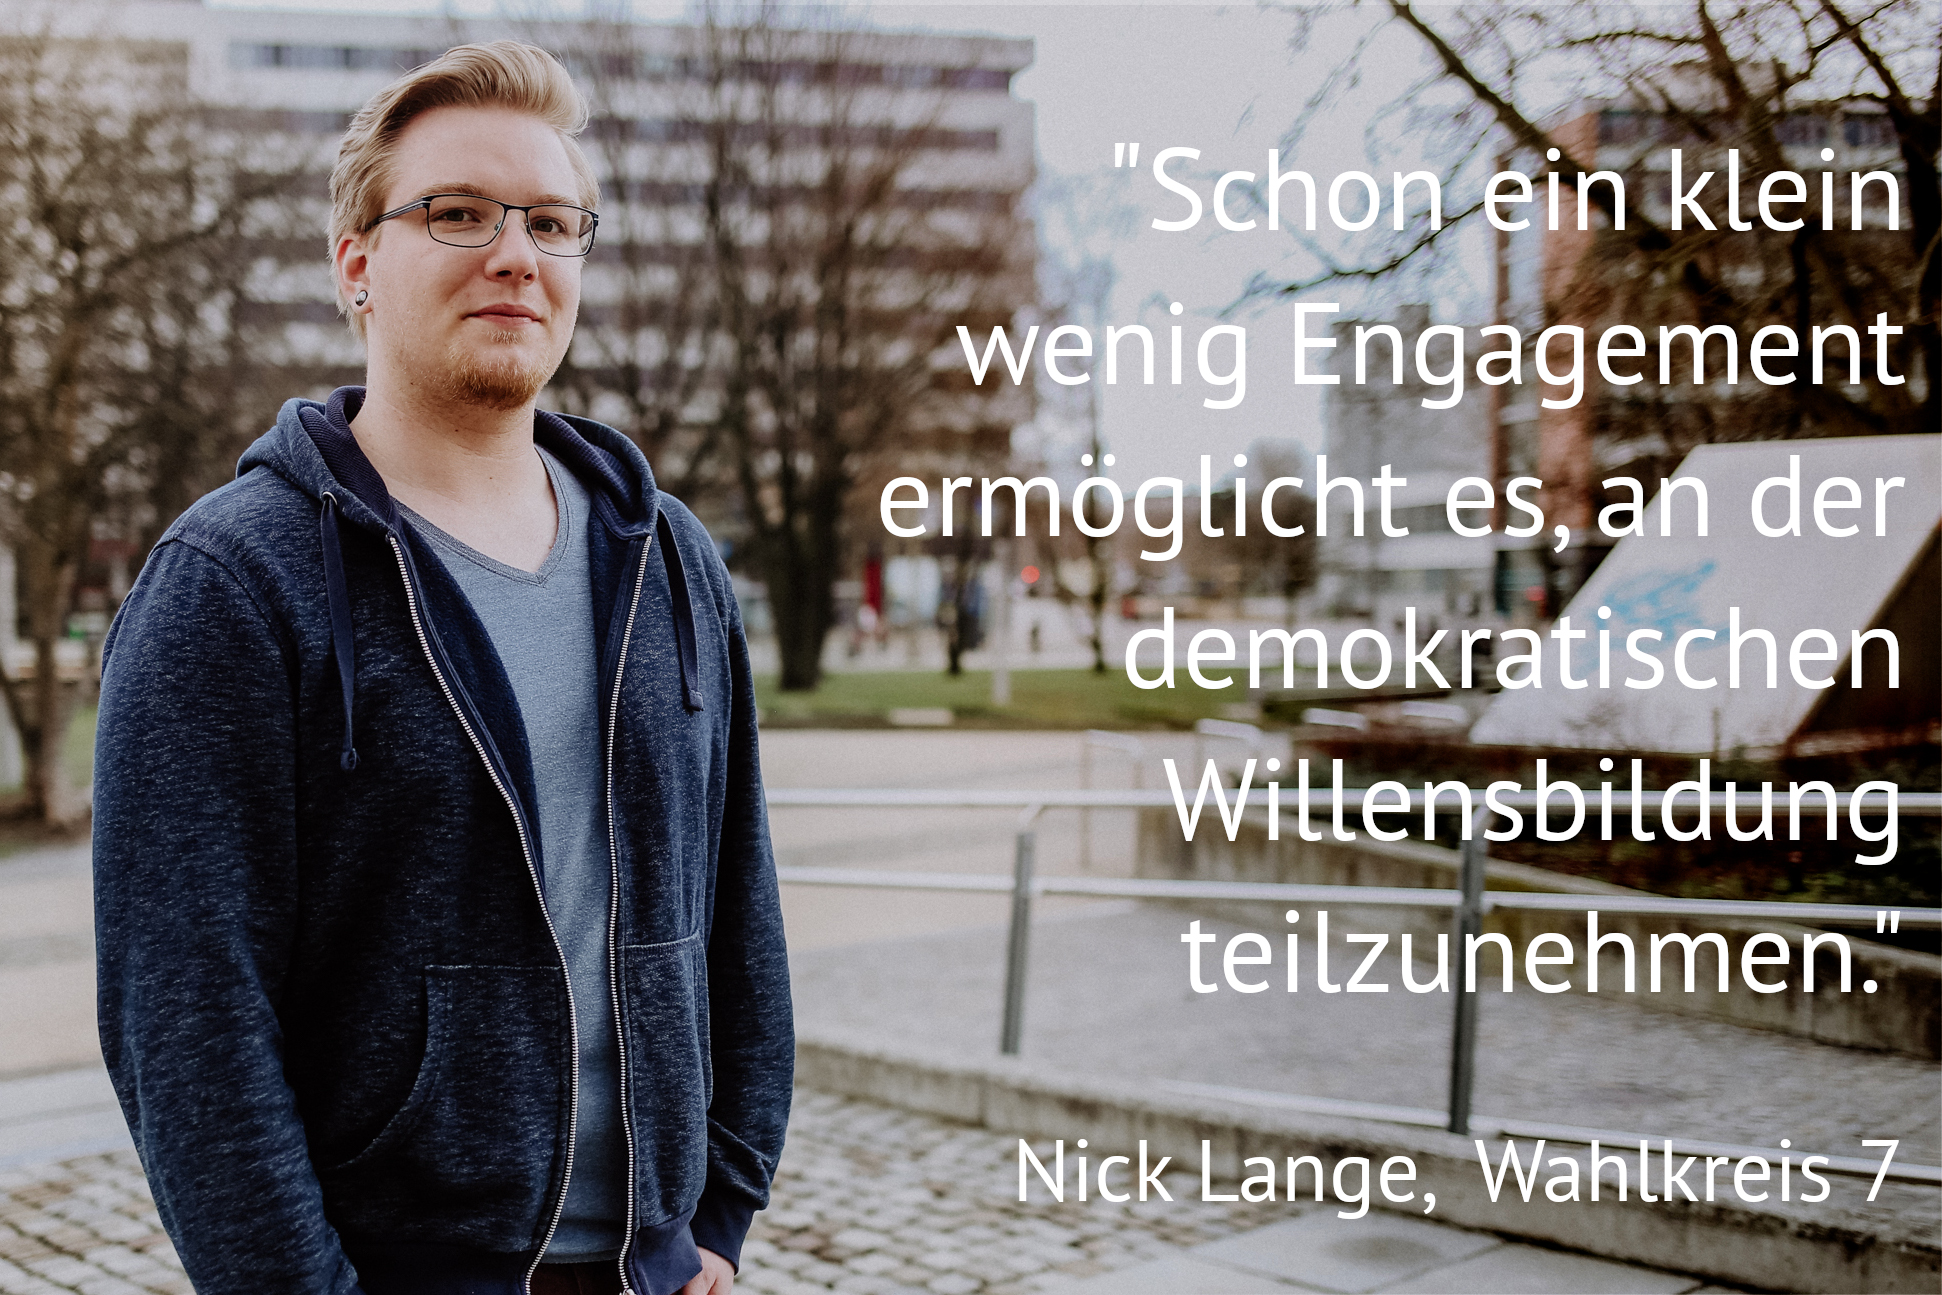 Nick Lange - Kandidat zur Stadtratswahl Chemnitz 2019, Wahlkreis 7 (Schönau, Siegmar, Stelzendorf, Rabenstein, Reichenbrand, Grüna, Mittelbach)